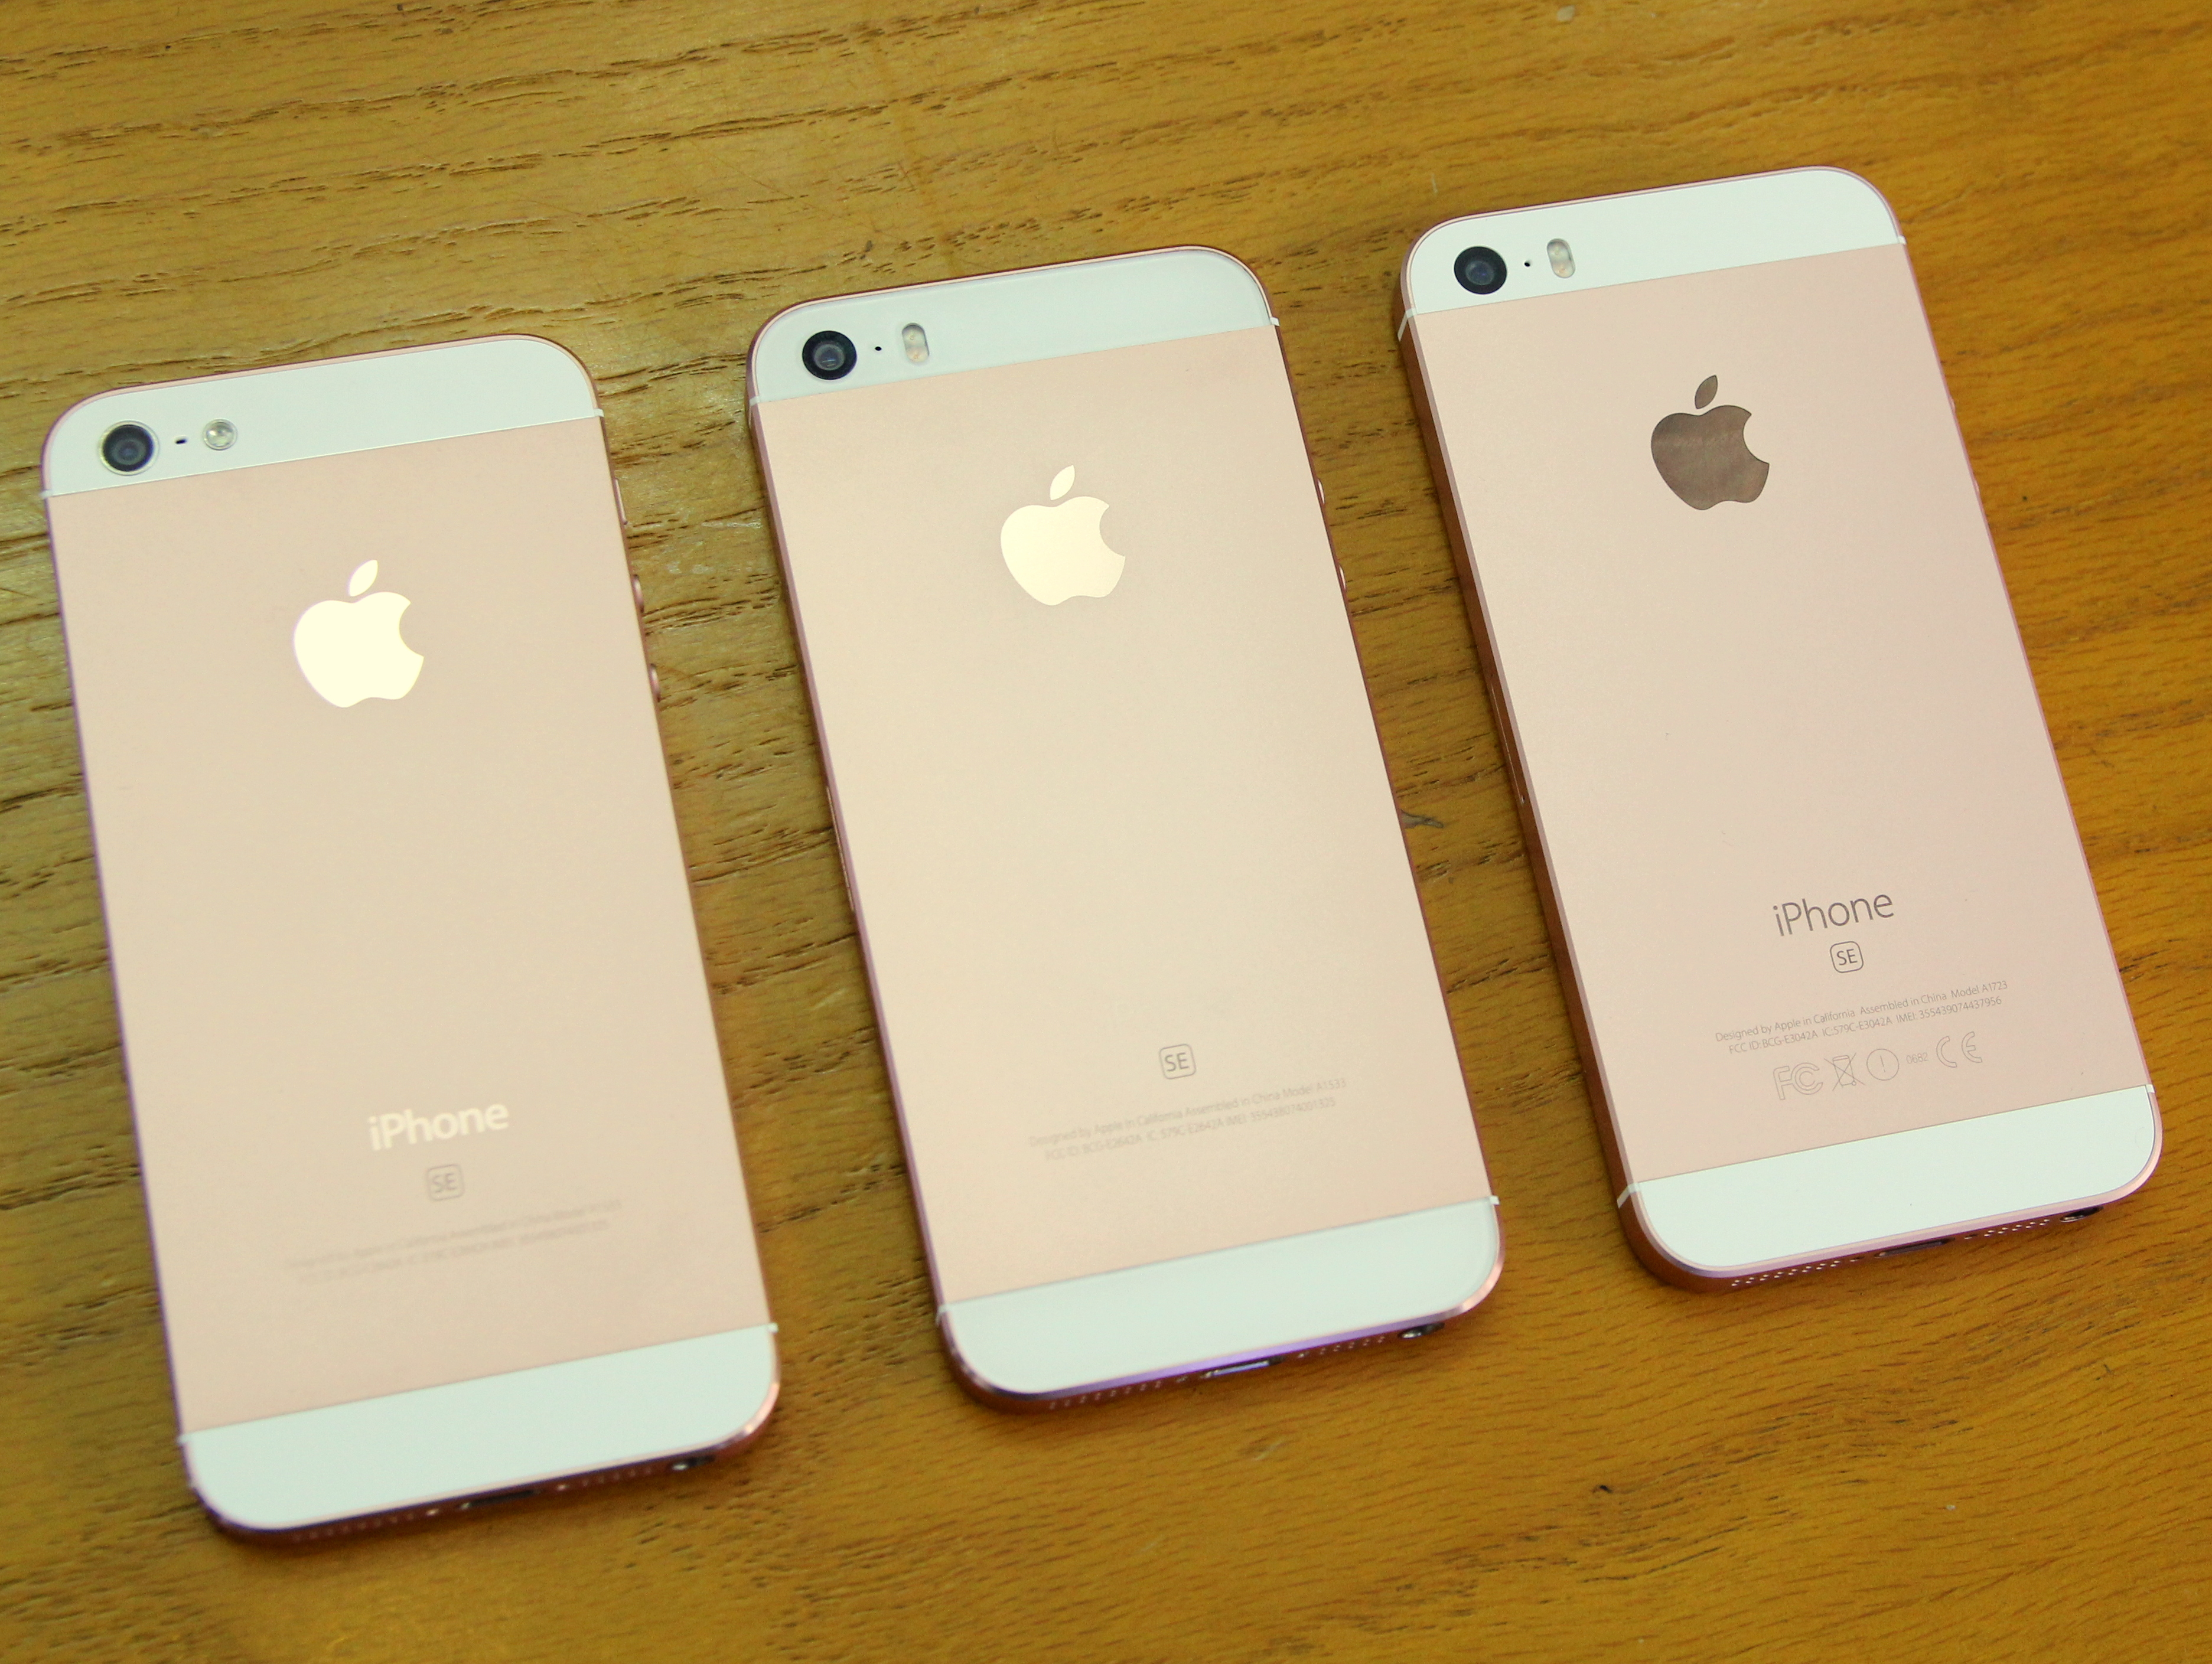 iPhone 5 và iPhone 5S thay vỏ thành iPhone SE mới xuất hiện tại Hà Nội - Ảnh: T.Hưng